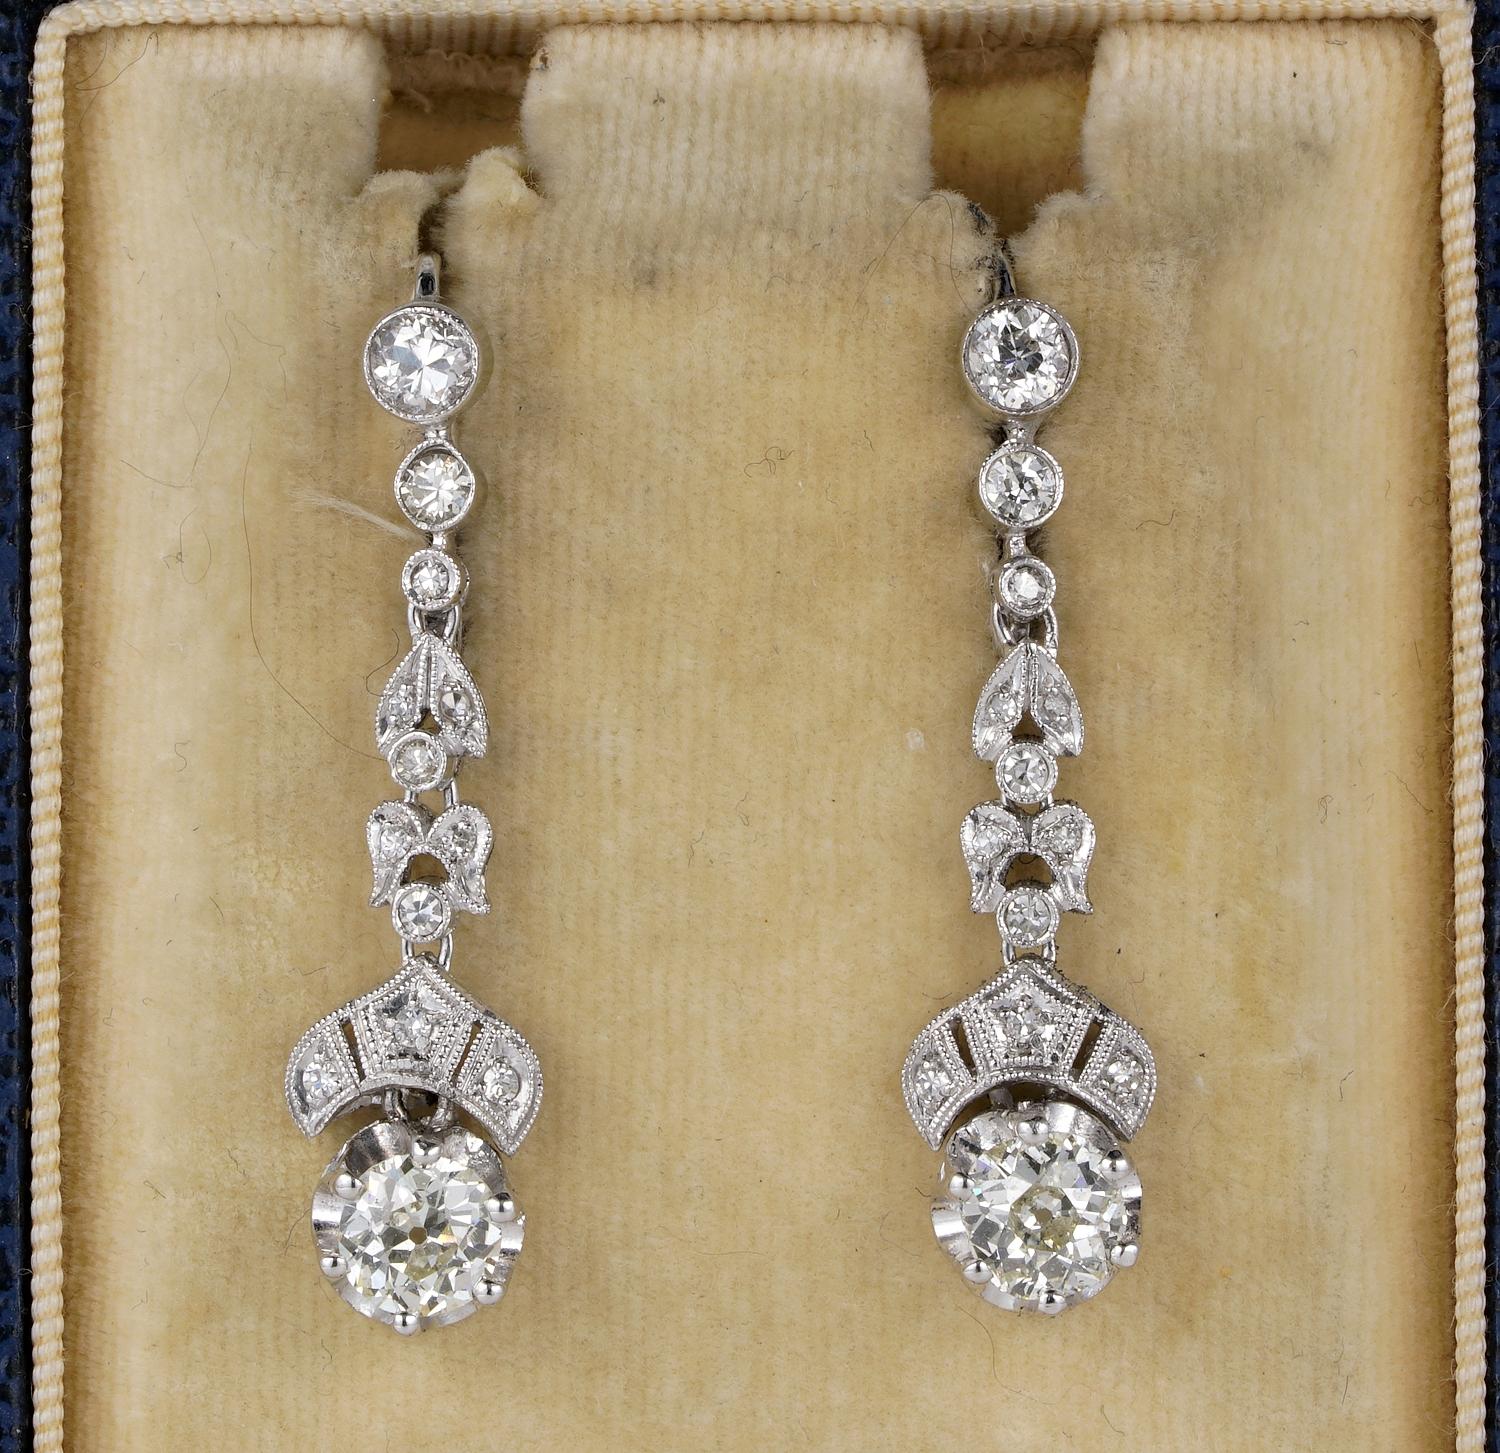 Diese schönen Ohrringe sind Art Deco Periode, 1925 ca.
Handgefertigt aus massivem 18 Kt gekrönt von Platin
Sanft montiert in einer Kombination aus Blatt- und Lünetten-Design, angeordnet in einer langen Reihe von Diamanten mit altem Schliff, die zu